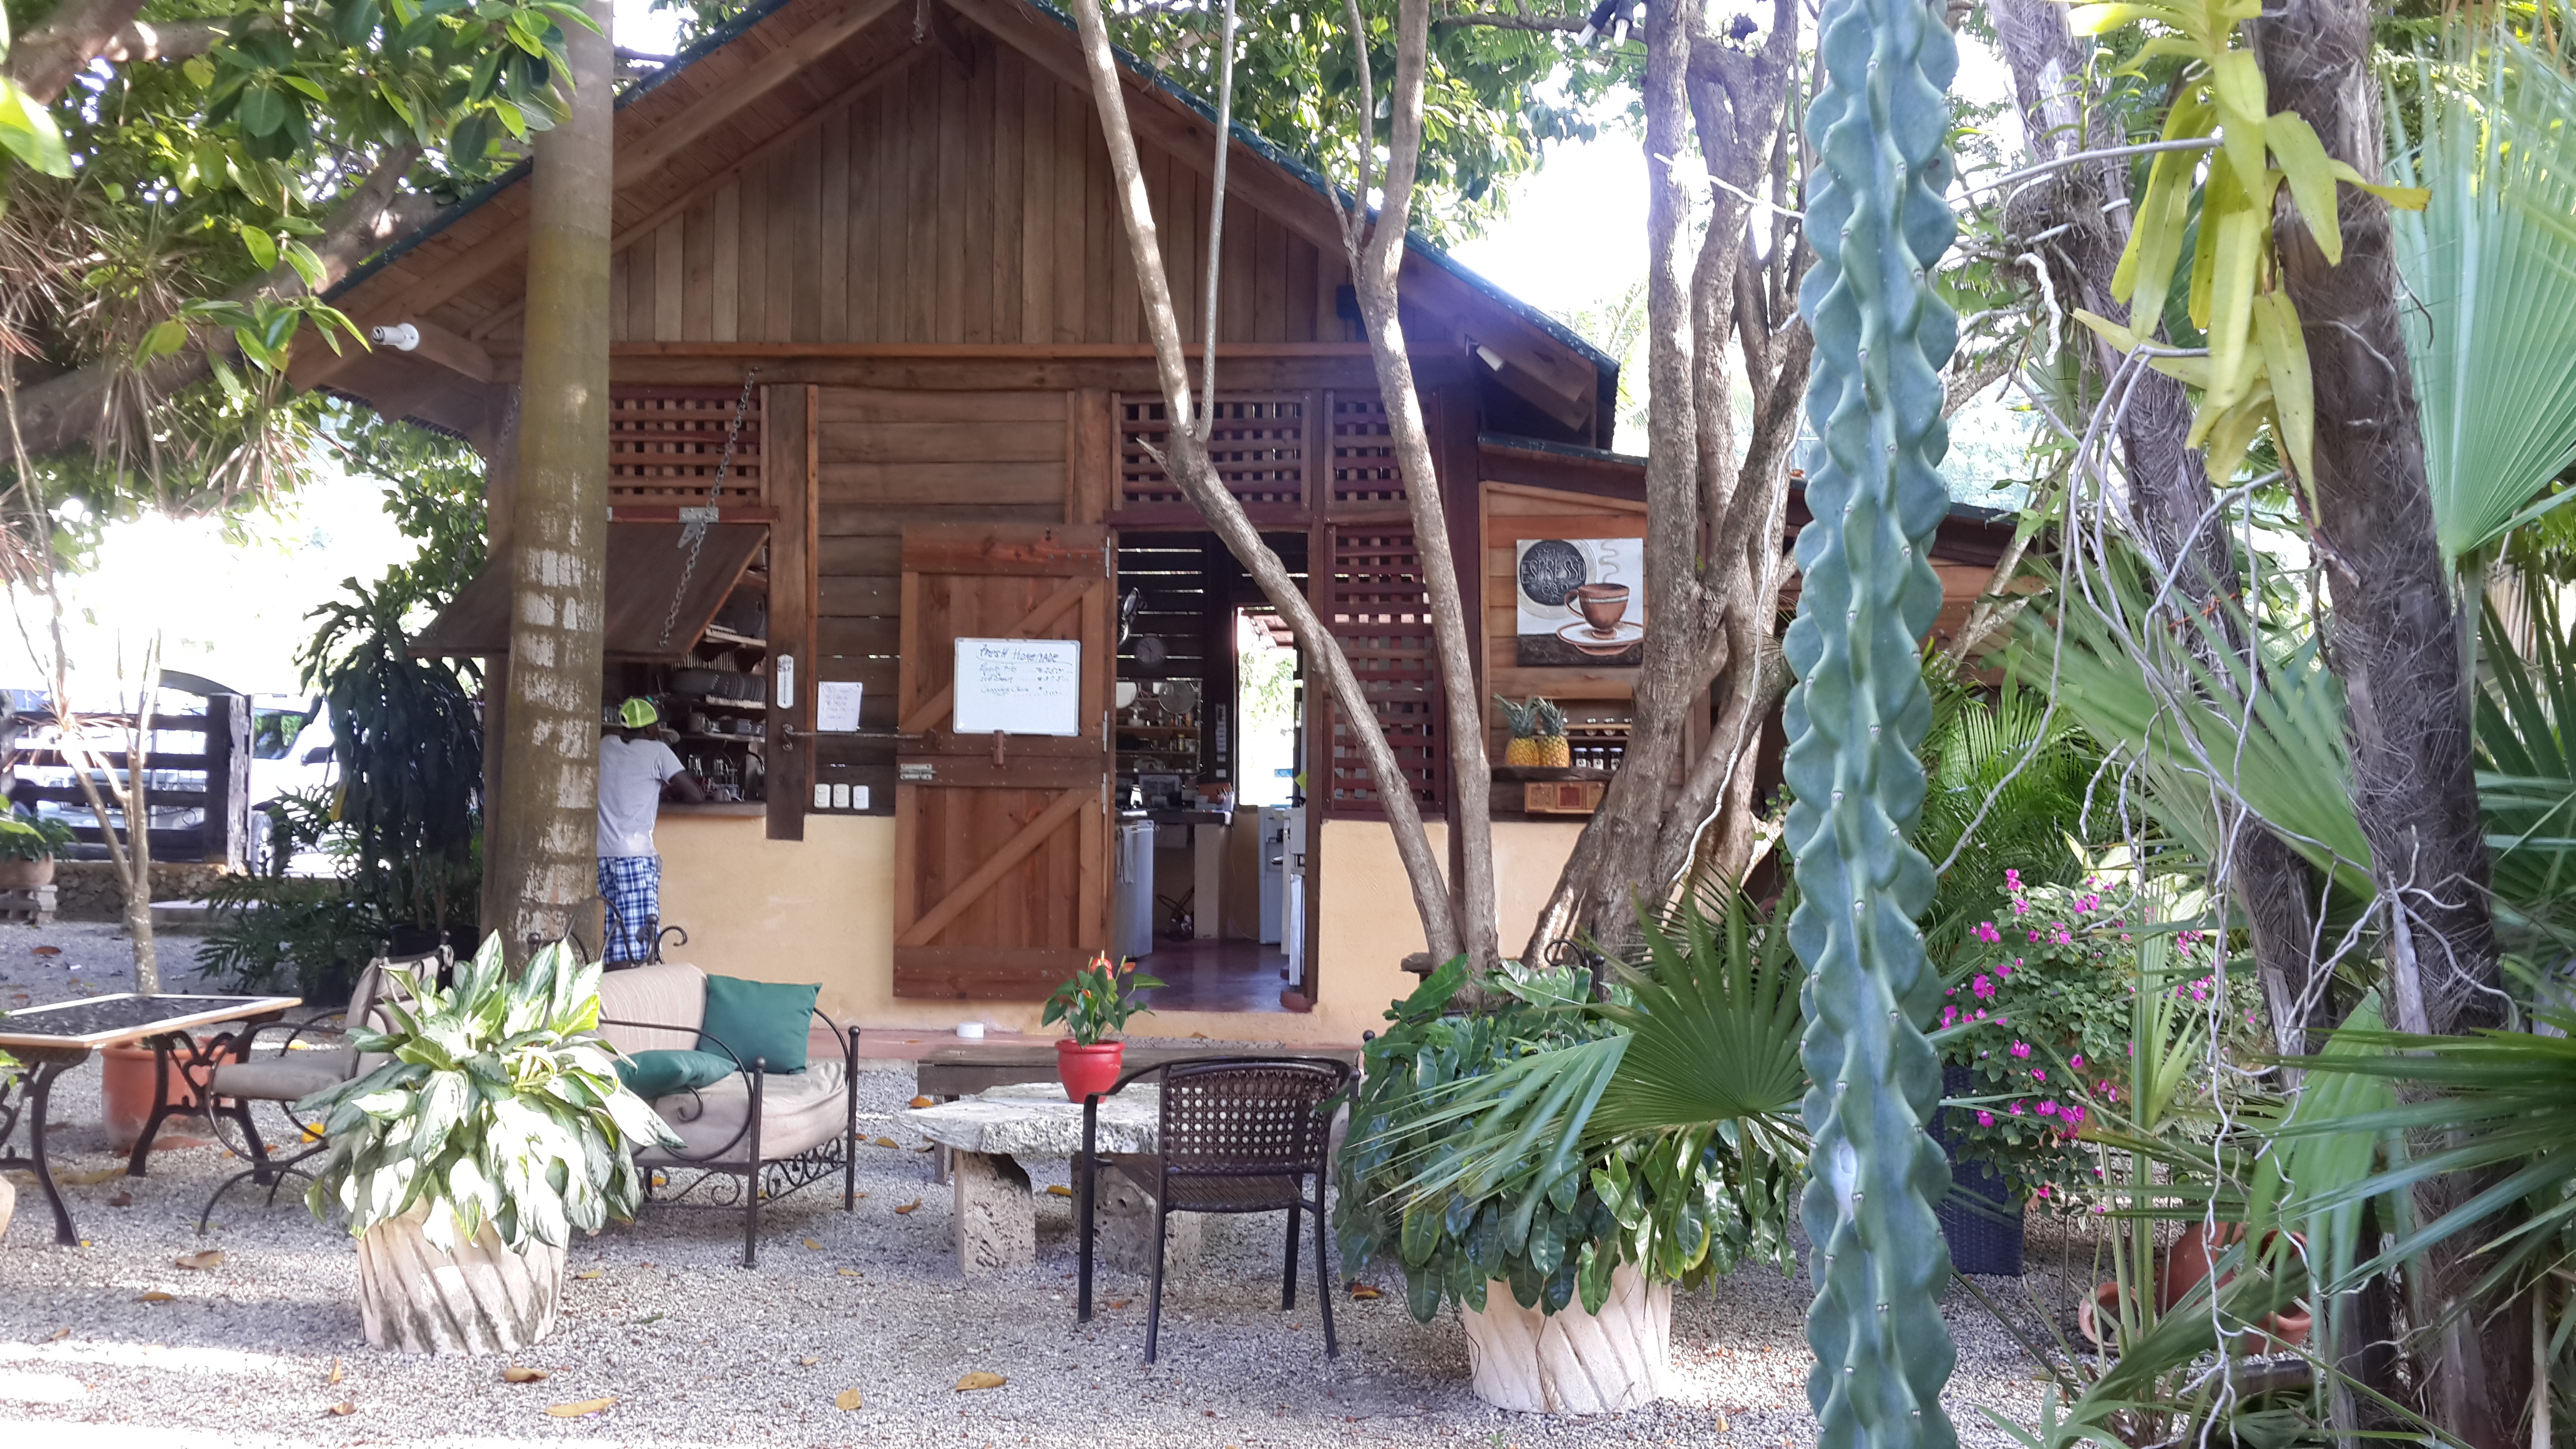 Restaurante a pocos metros de Playa Grande donde se puede comer o tomar un rico café.